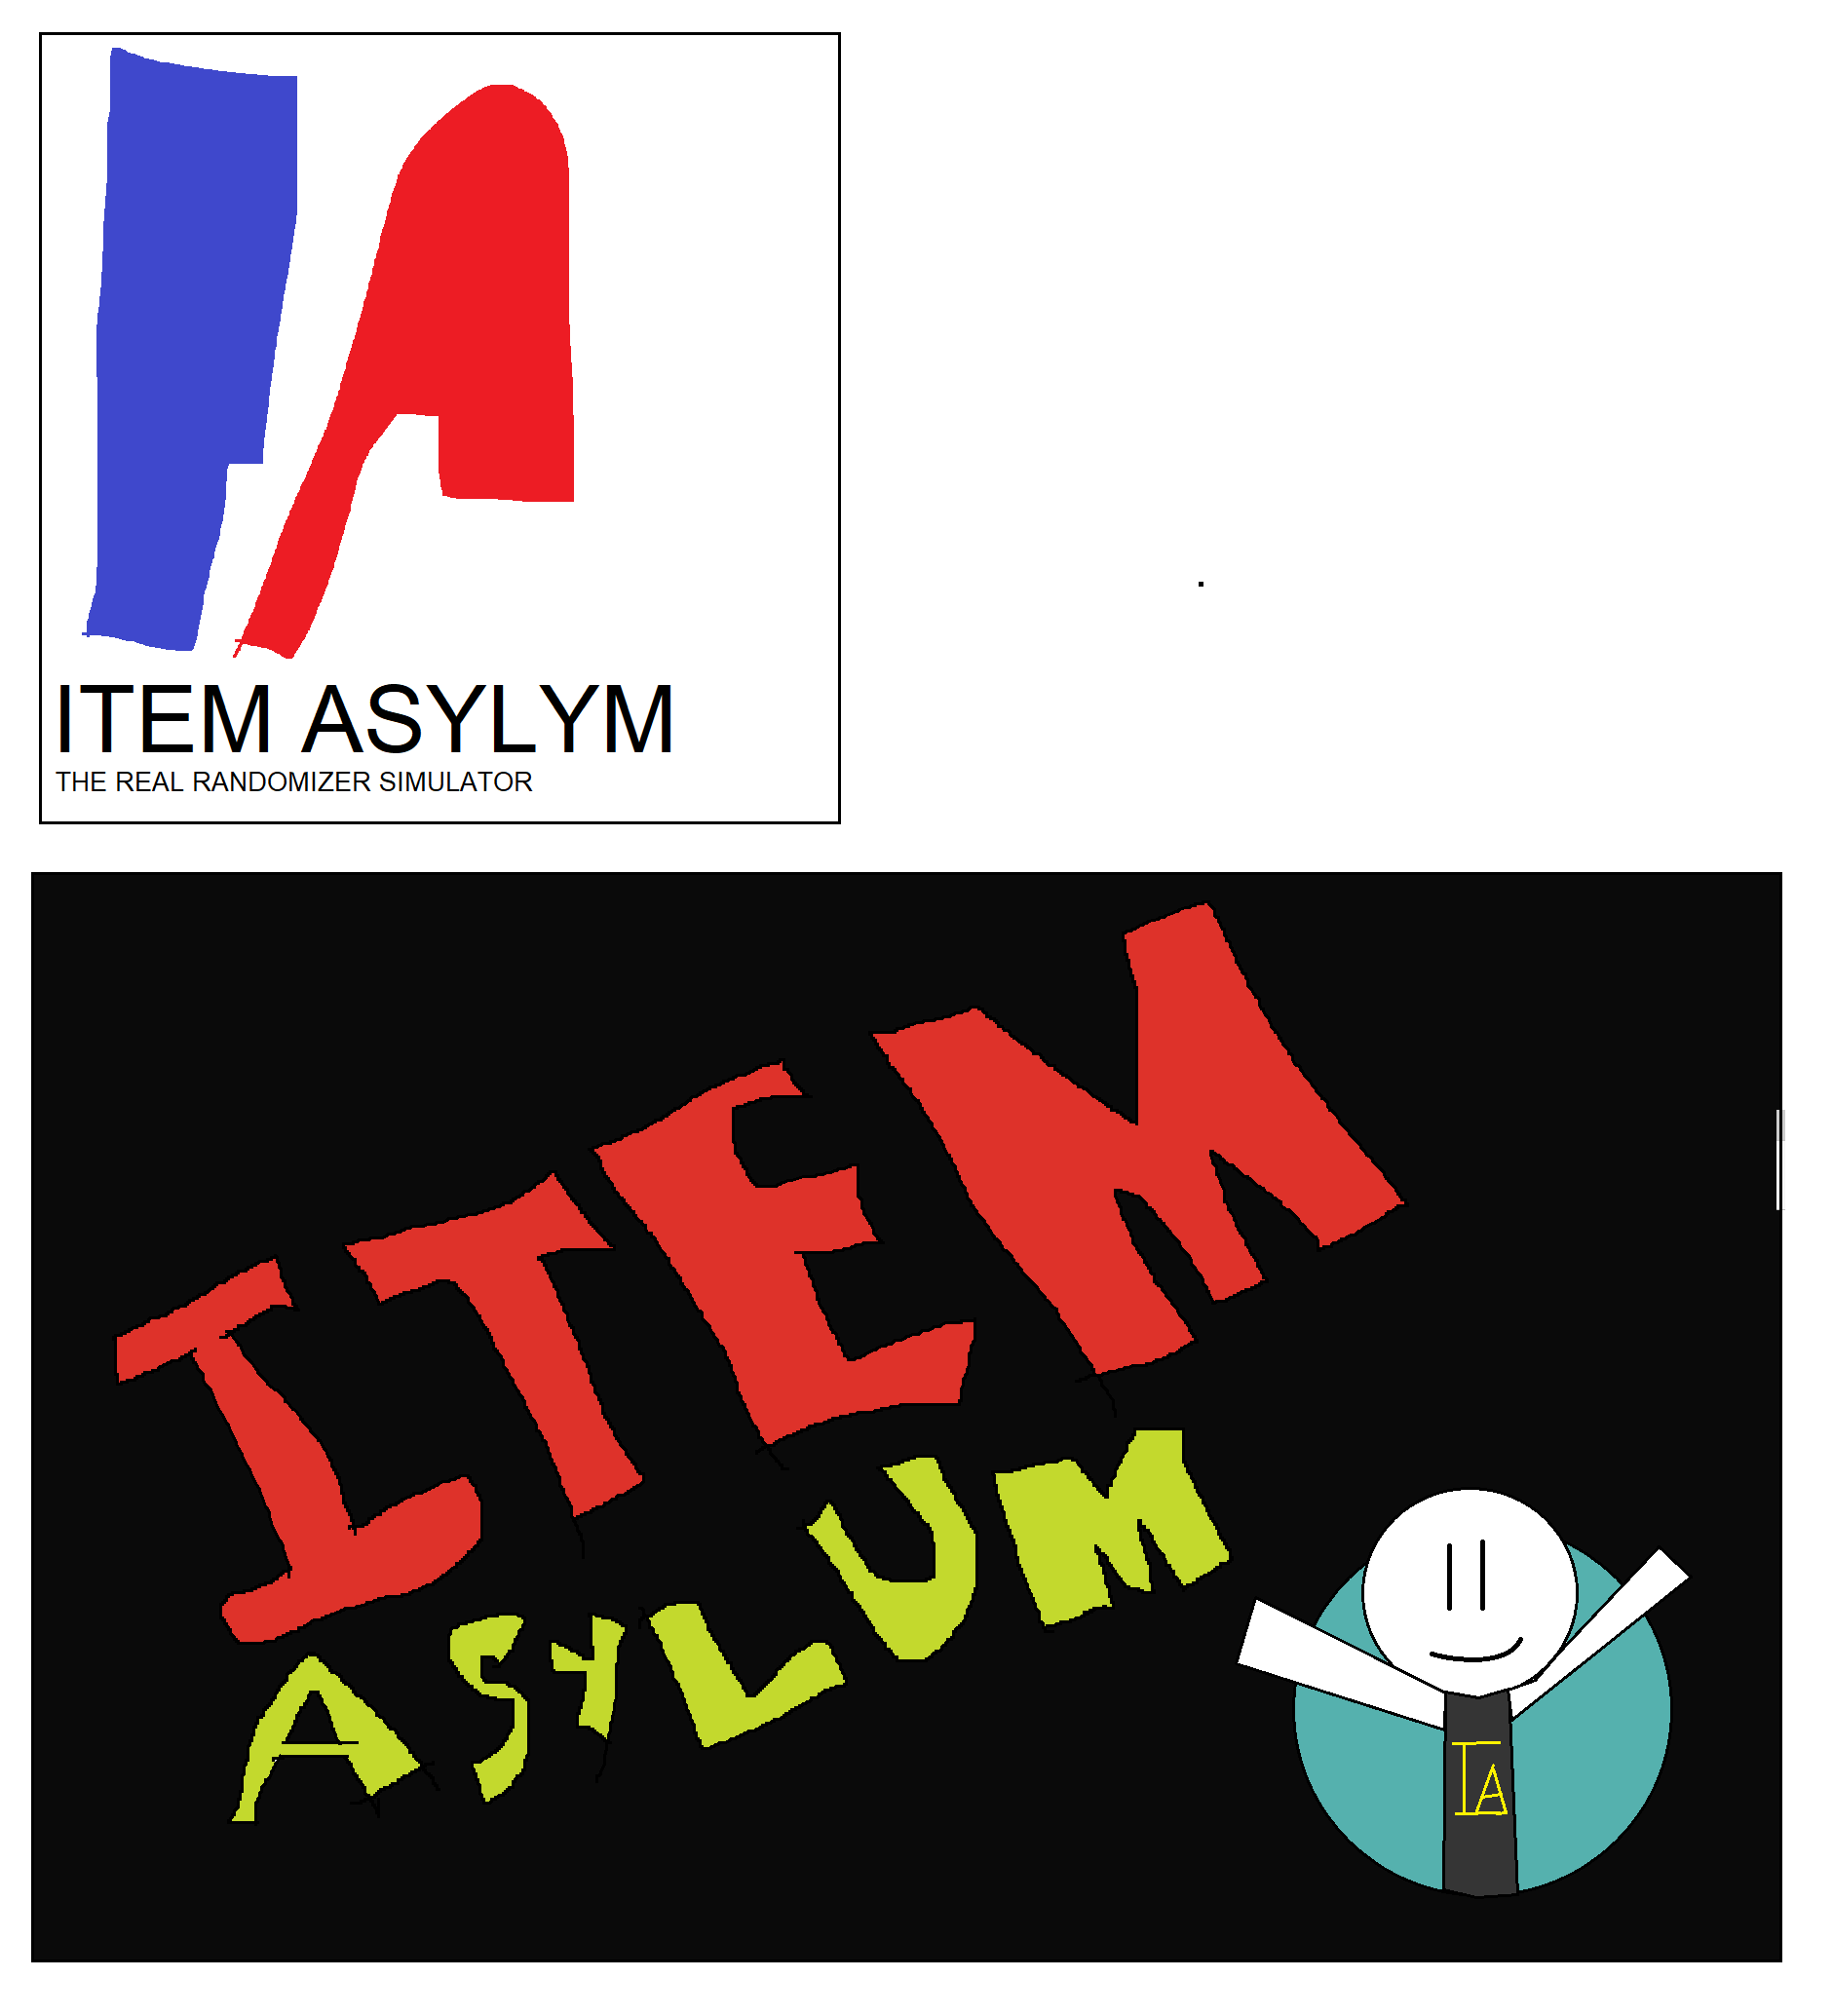 i did a lil fanart of item asylum : r/ItemAsylum